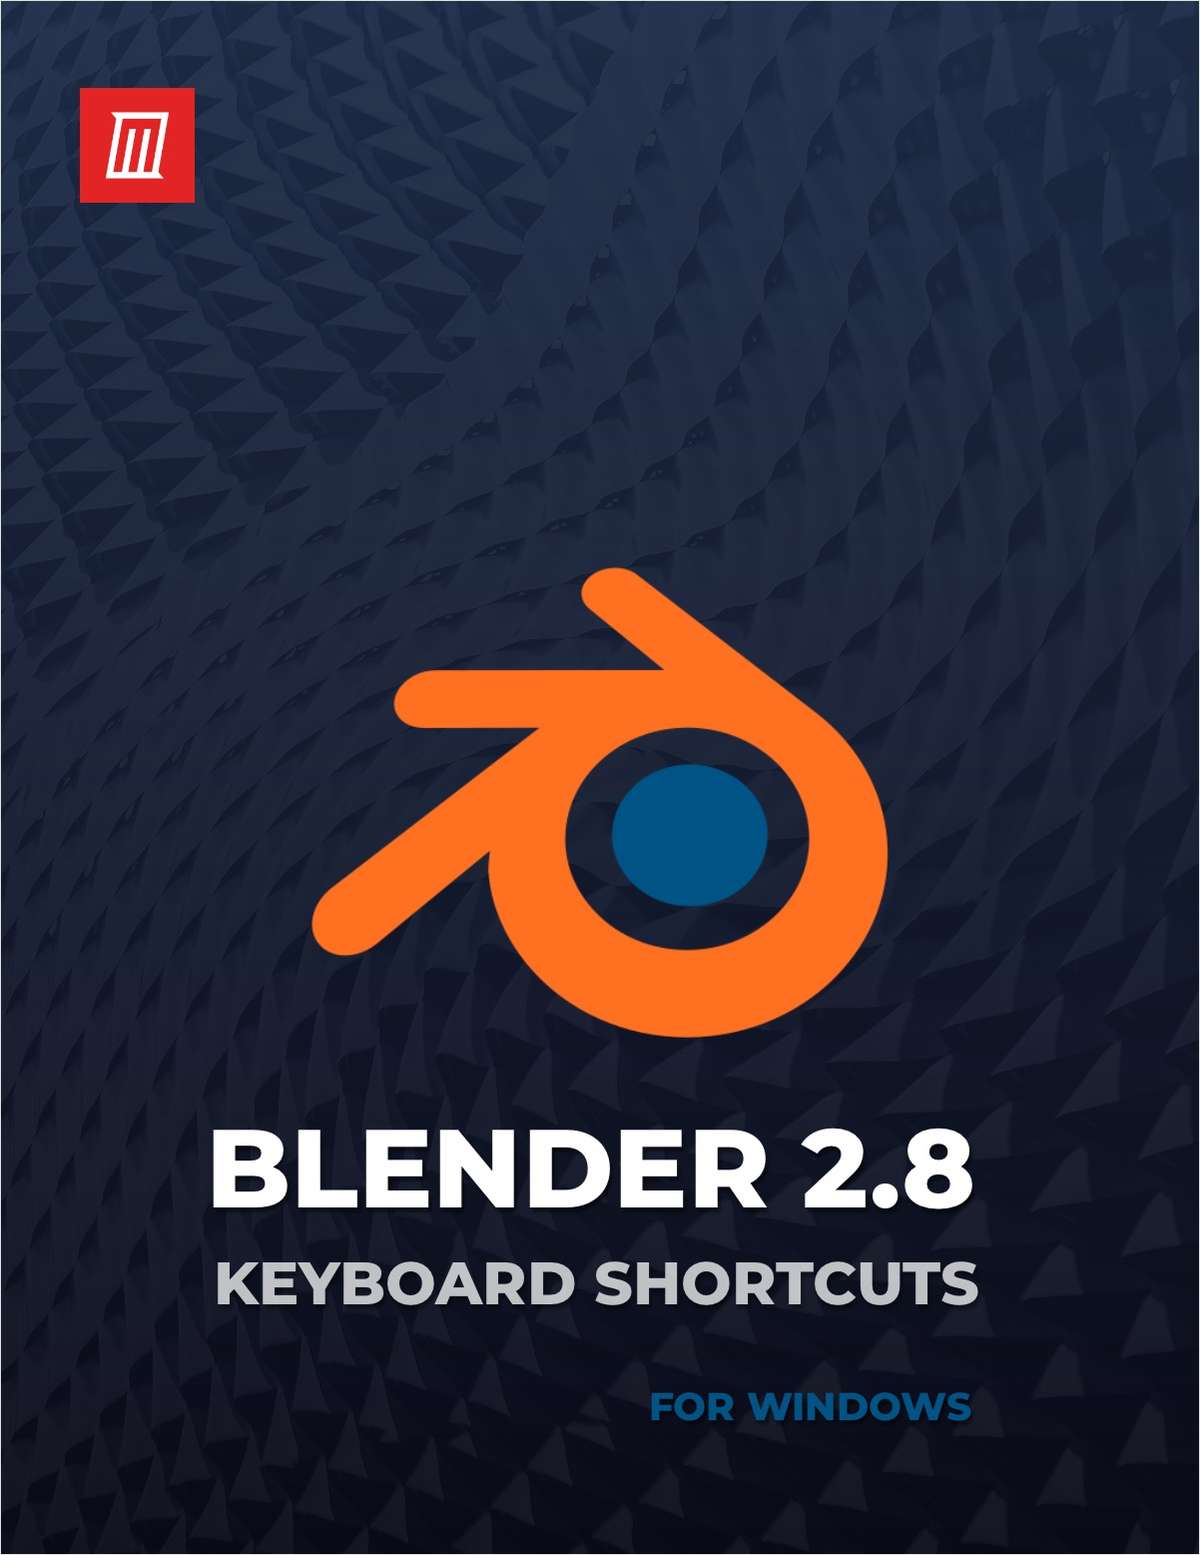 Erhverv prik Kakadu Blender 2.8 Keyboard Shortcuts for Windows, Free MakeUseOf Cheat Sheet